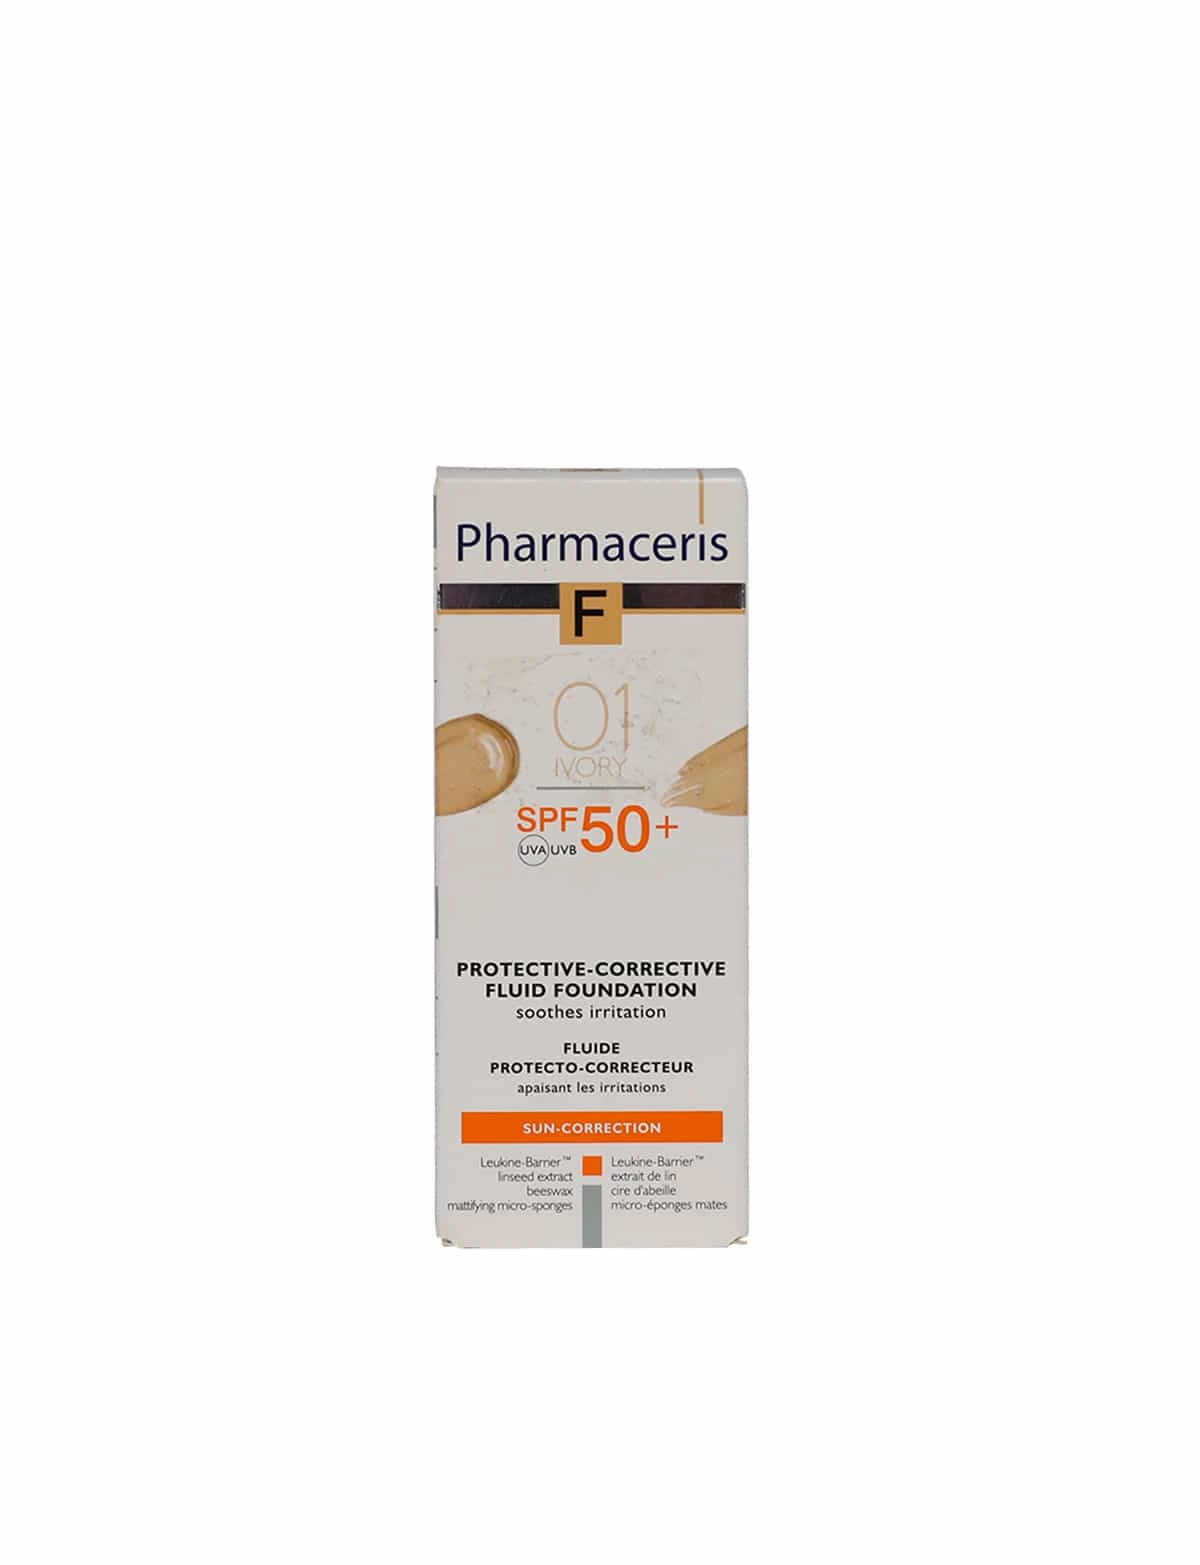 Pharmaceris Protective Corrective Fluid Foundation spf 50 01